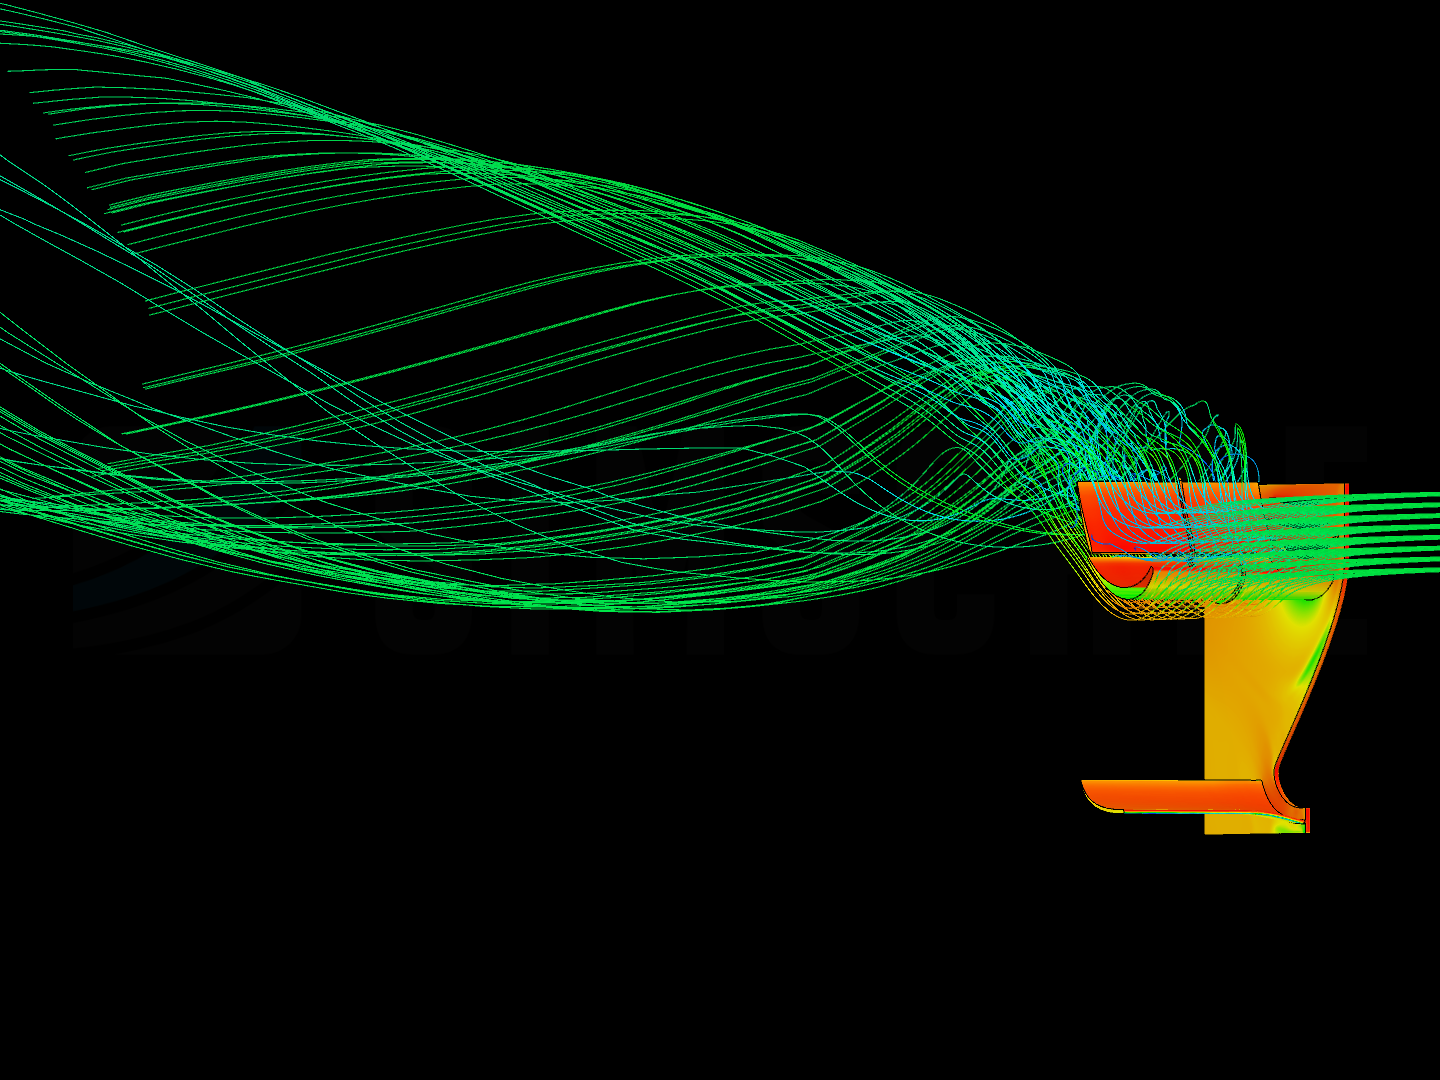 f1_rear_wing_aerodynamic_analysis image